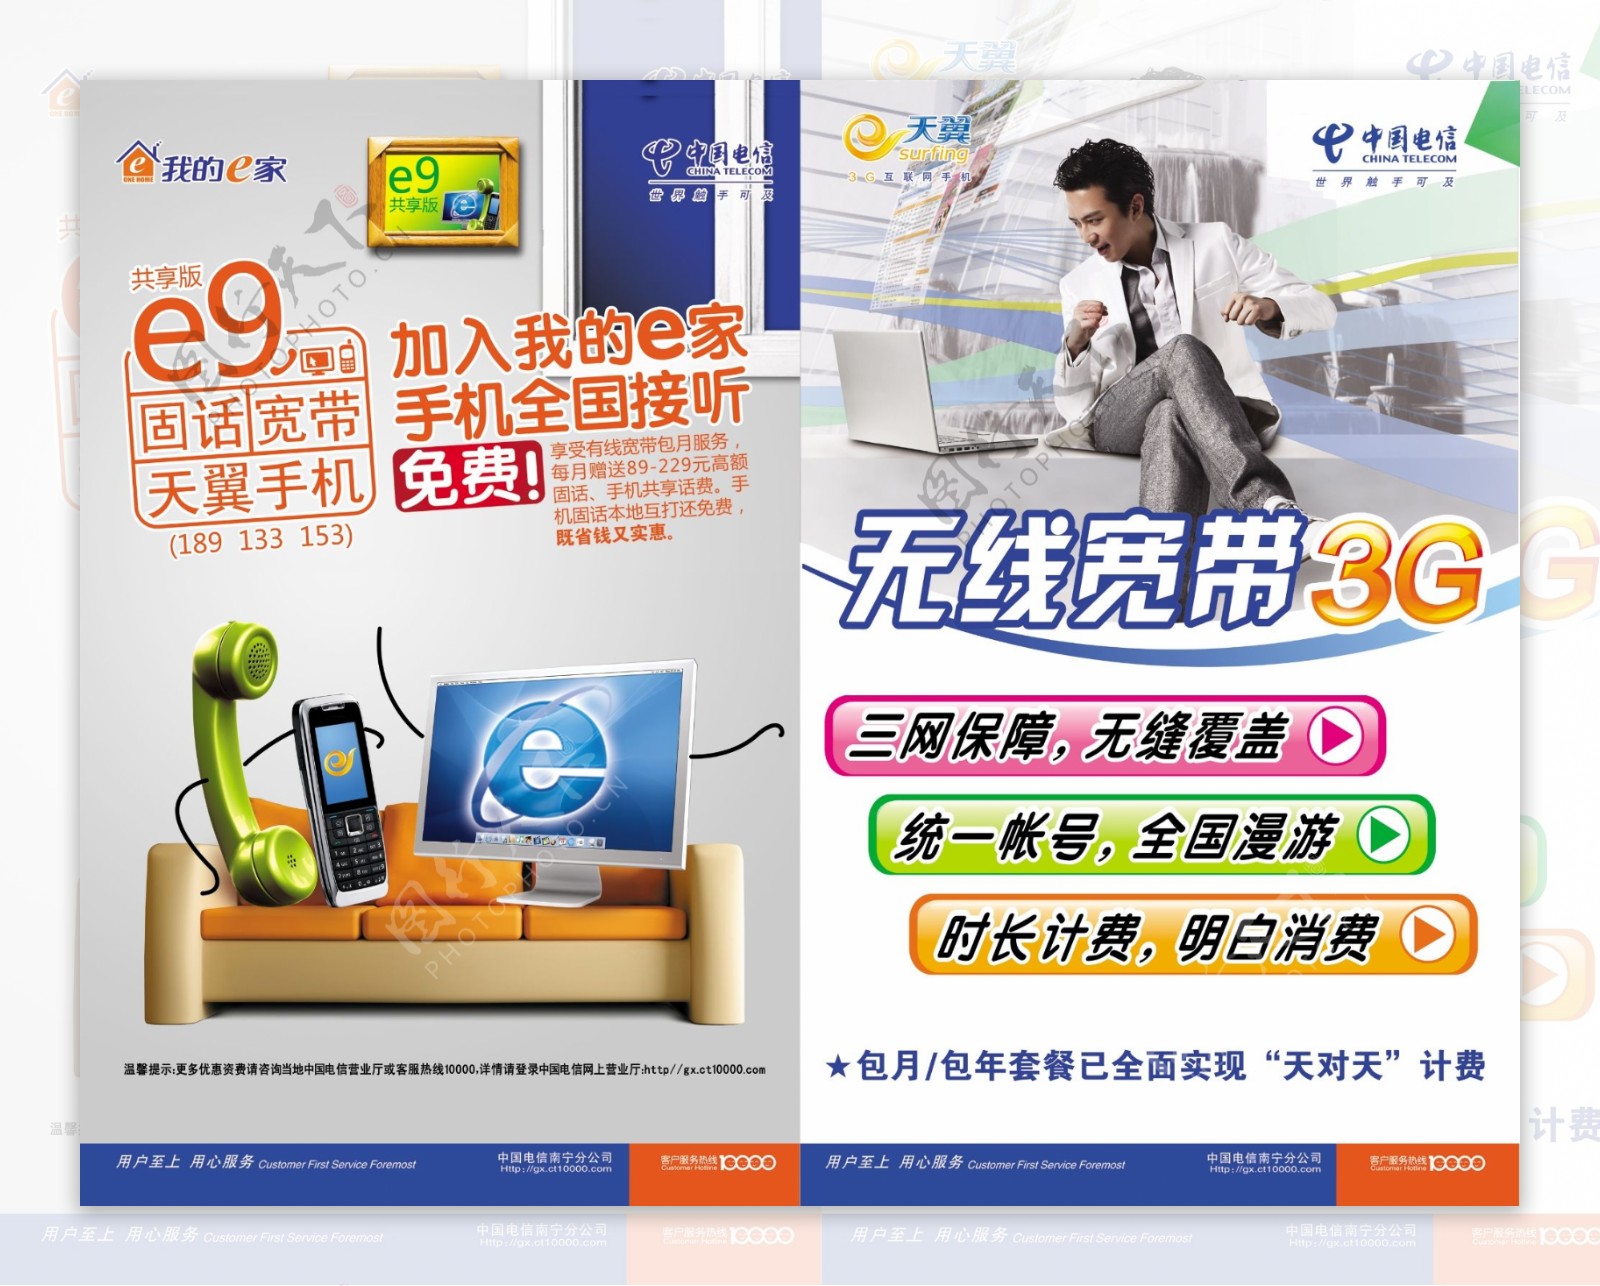 中国电信马山分公司天翼3g广告分层不细图片